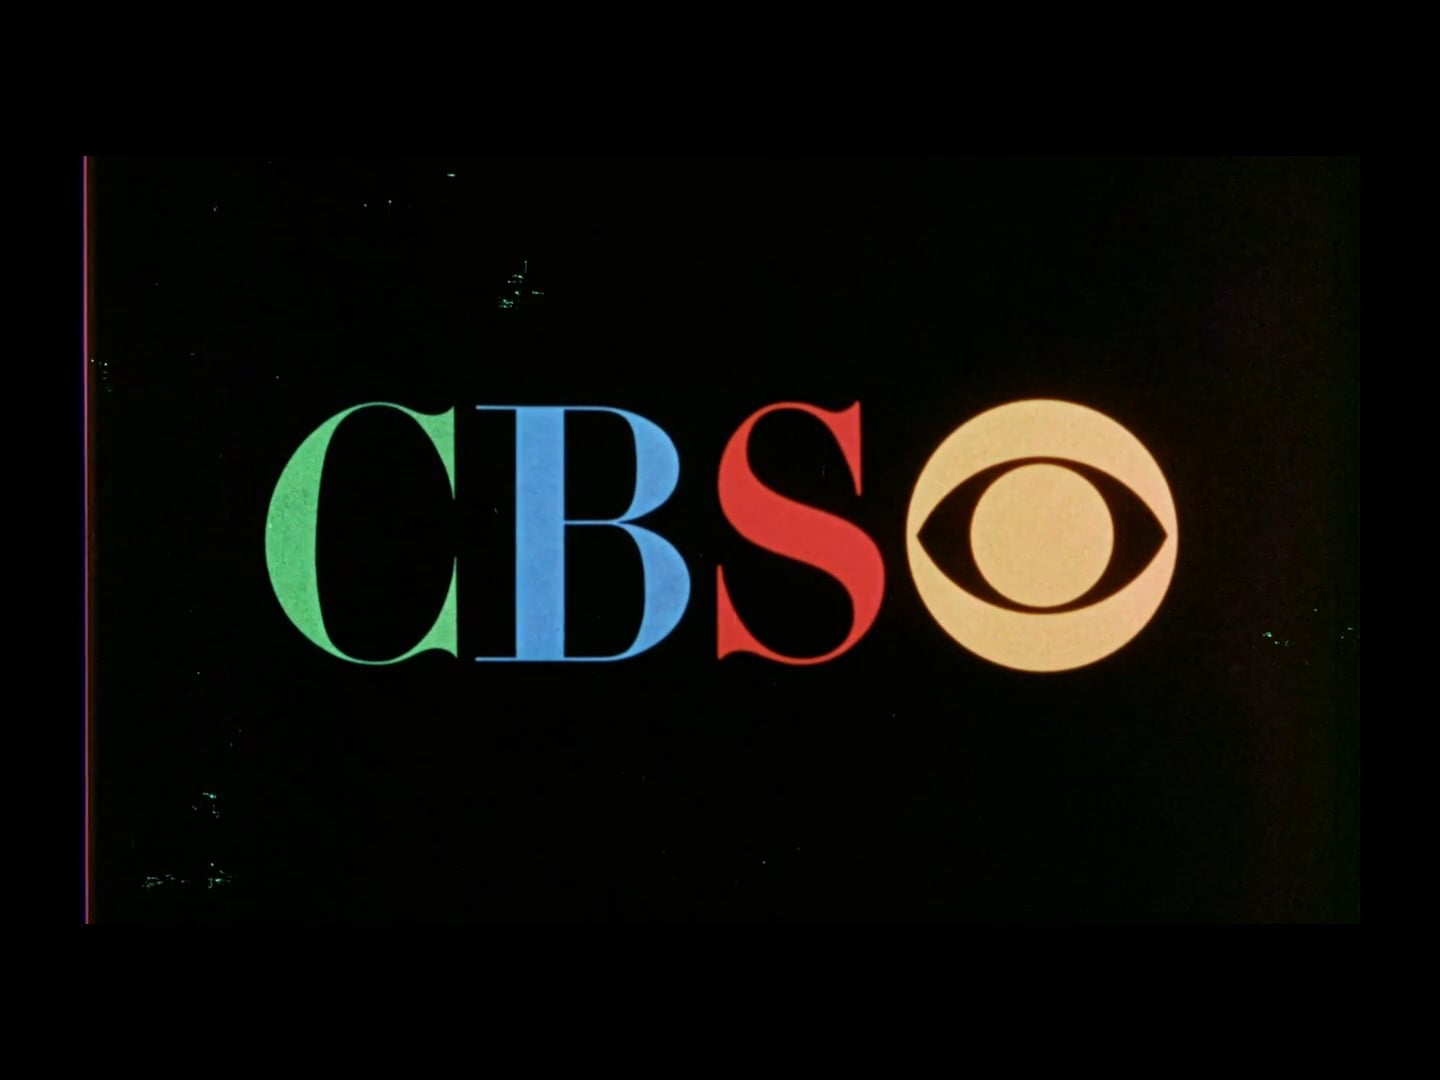 1960s CBS 